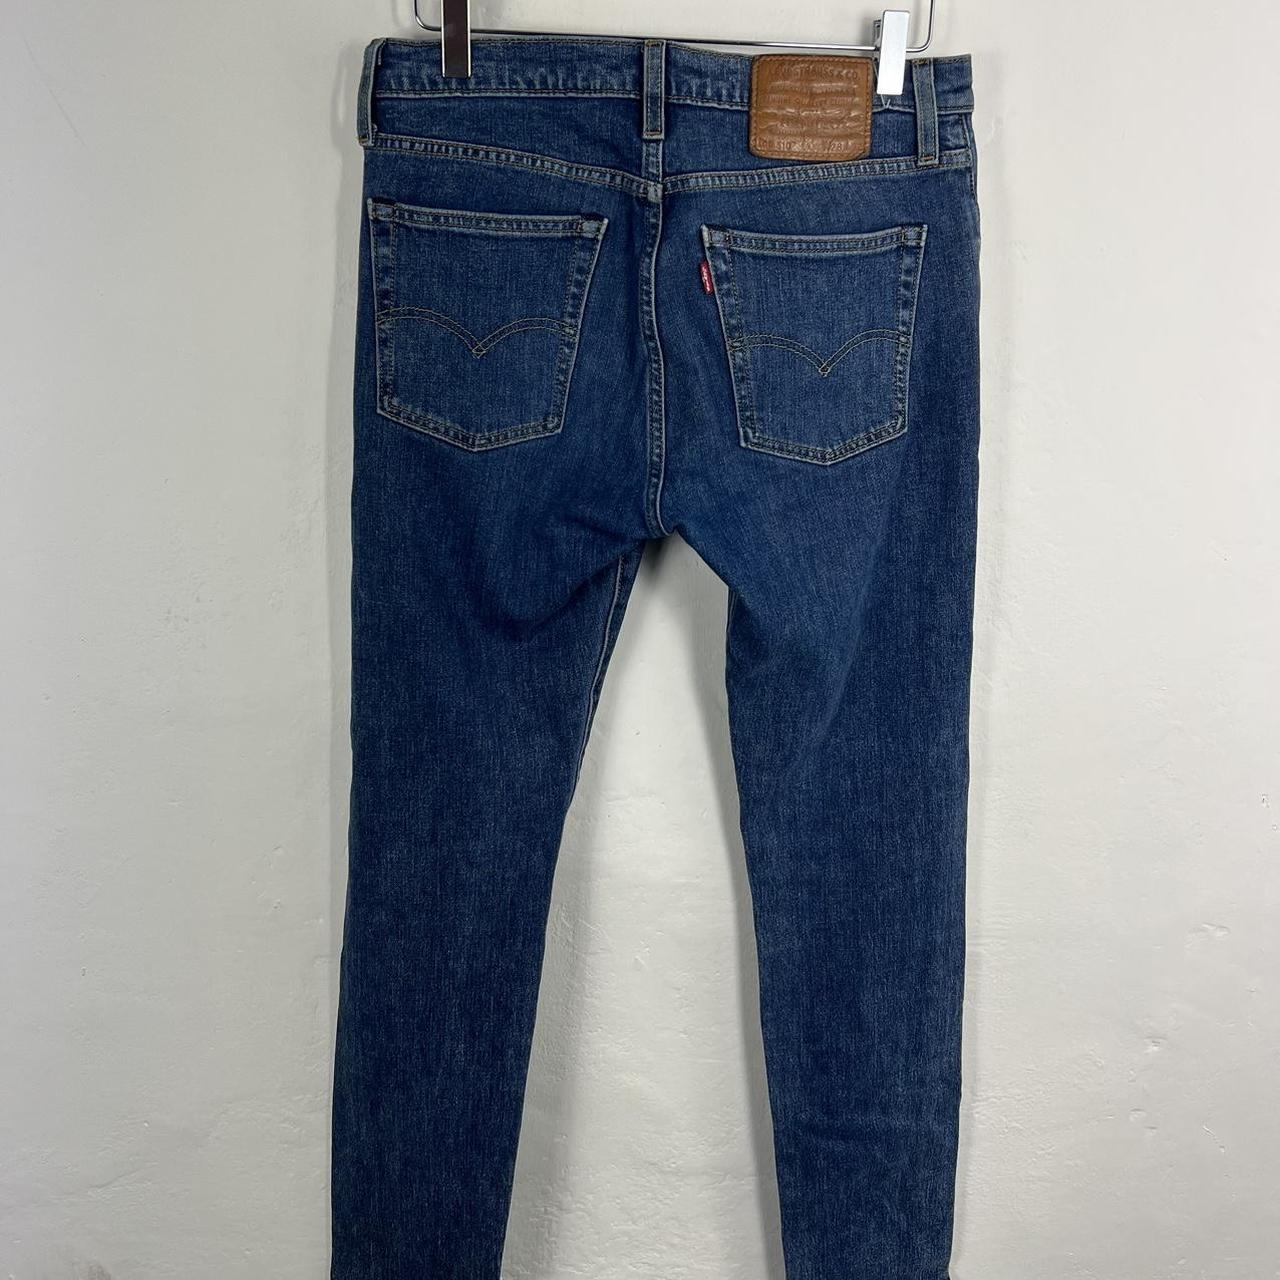 Levi’s 510 jeans 28x32